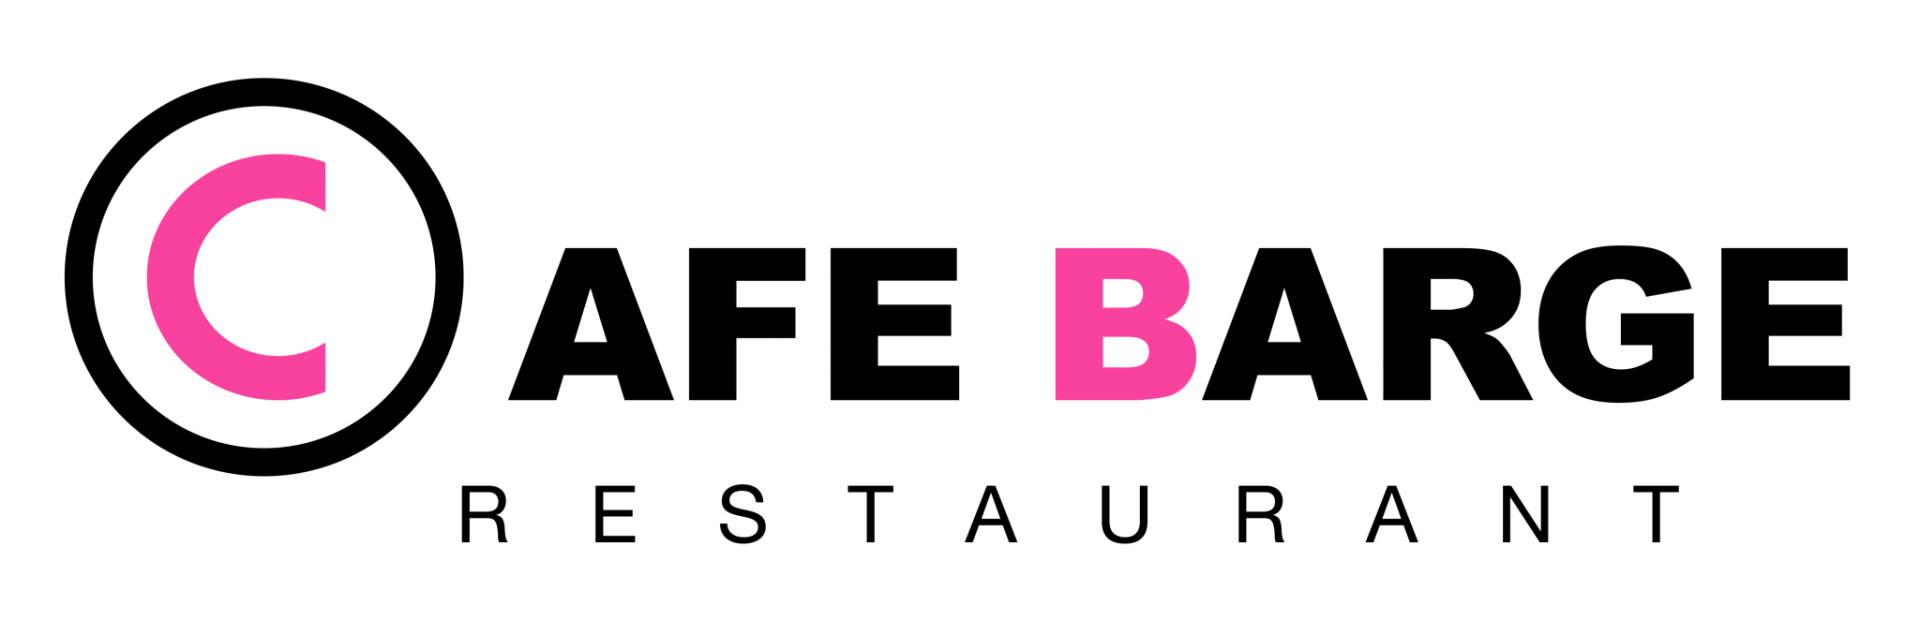 Café Barge RESTAURANT